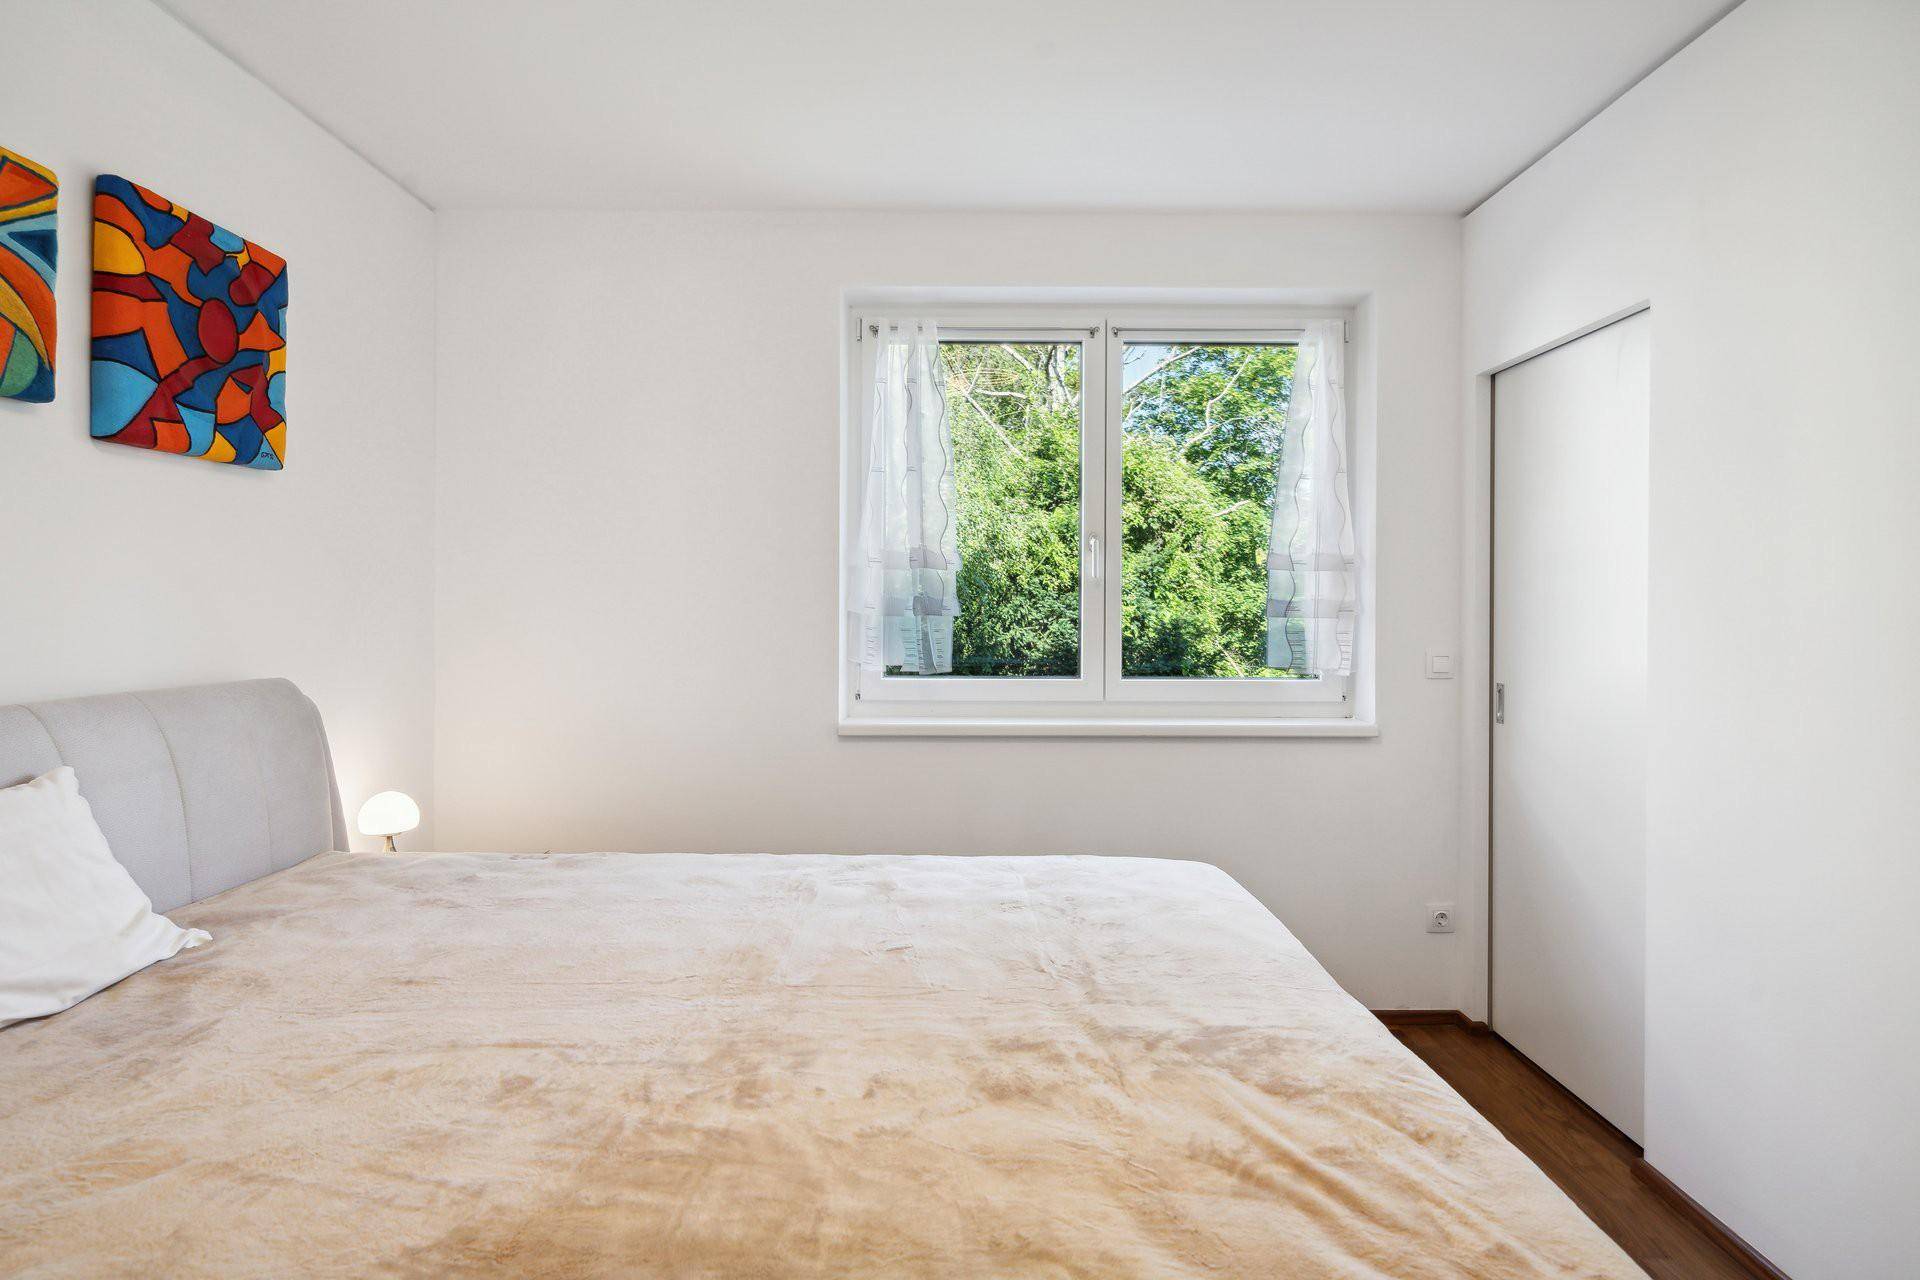 Zimmer mit grünem Ausblick